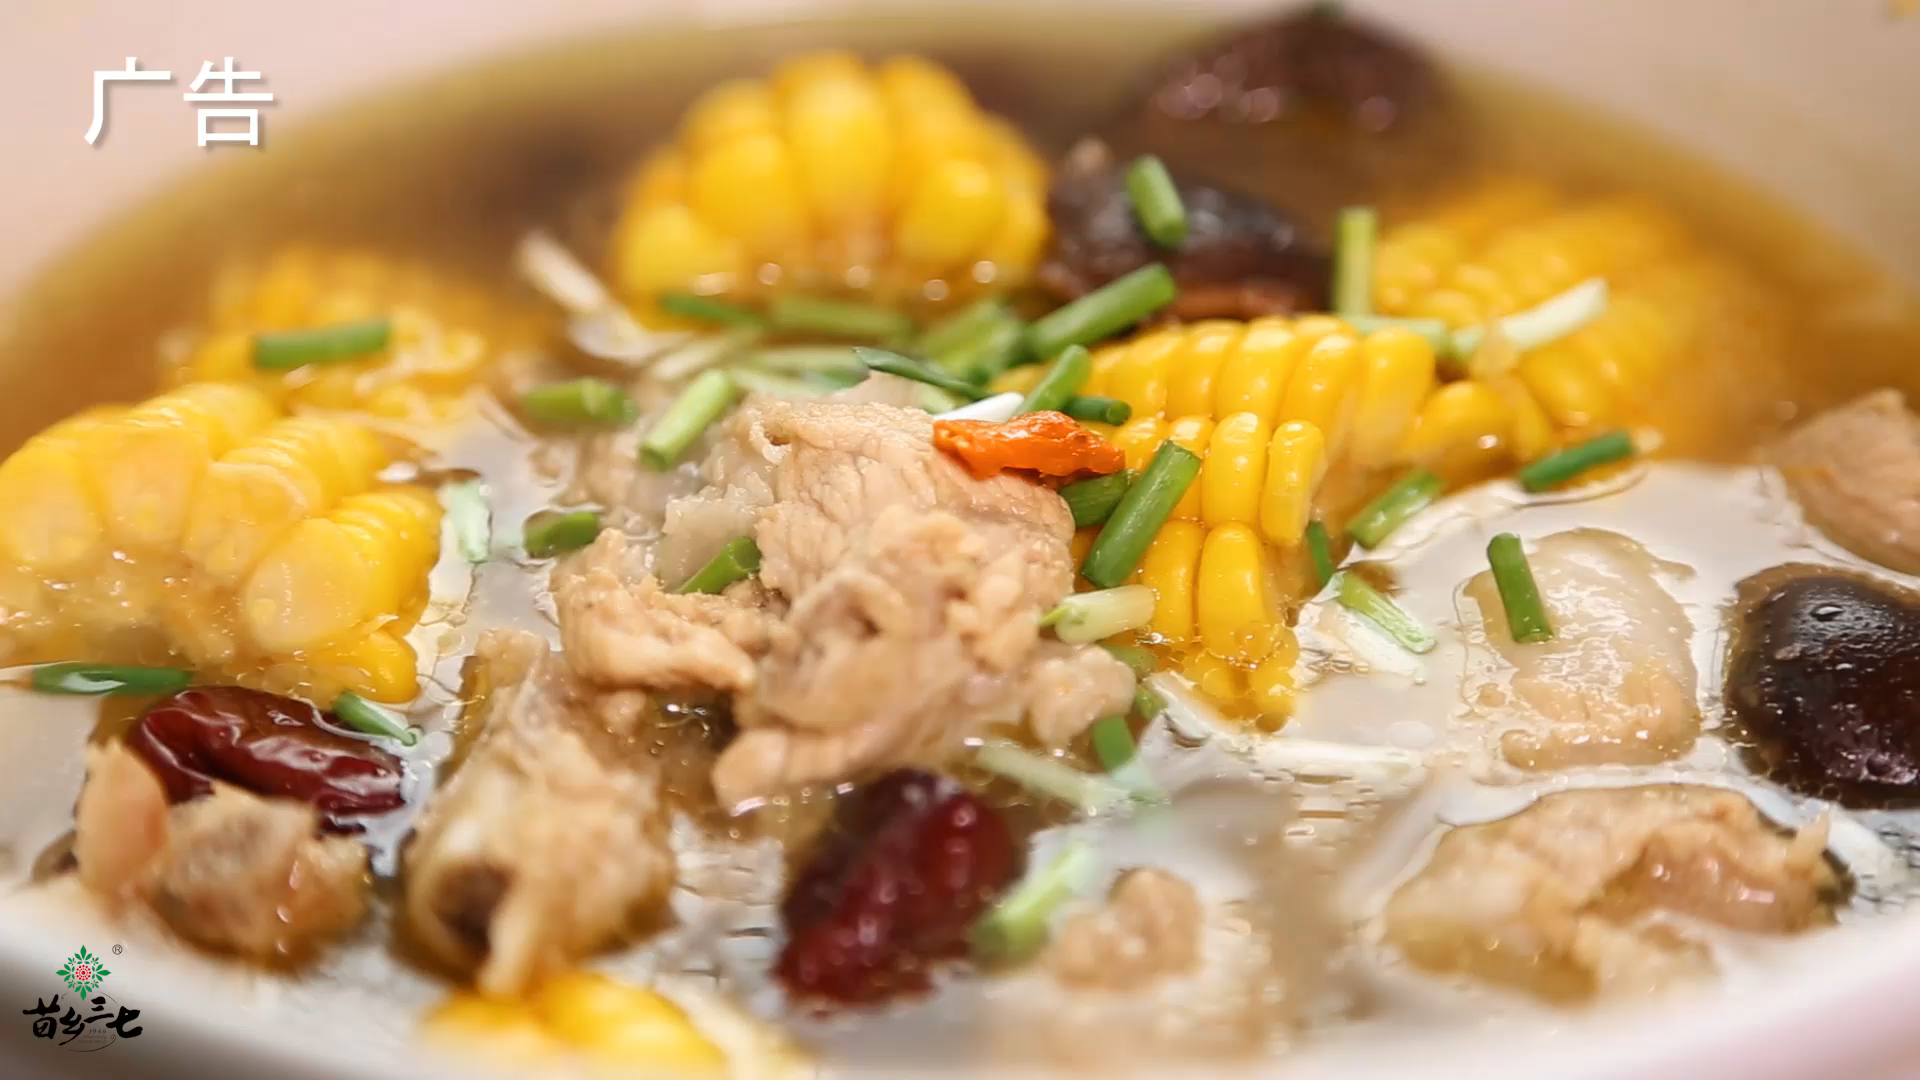 堪比餐厅味道的家常美食教程,暖胃的三七玉米排骨汤